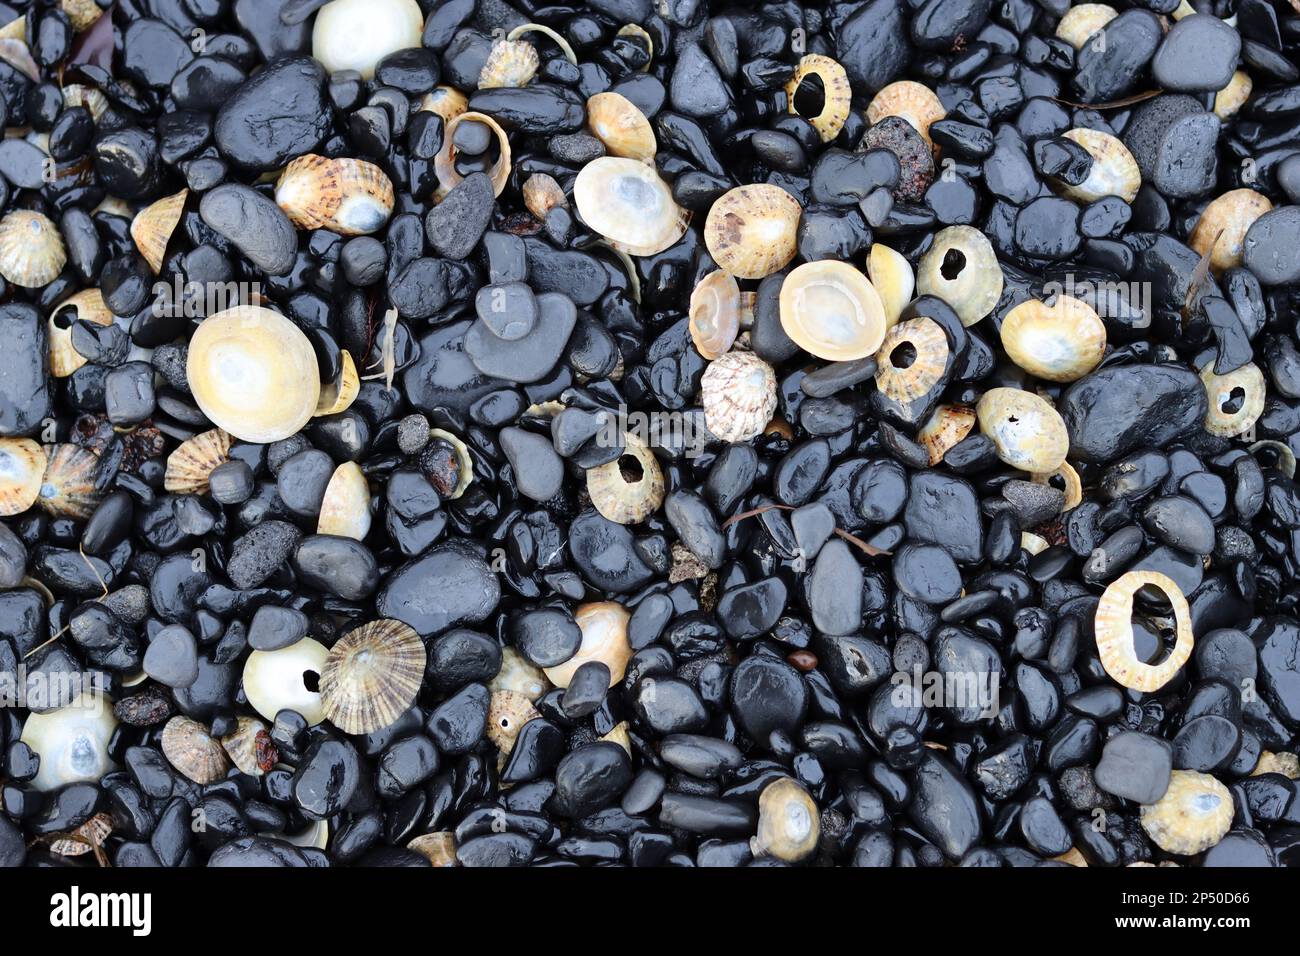 Galets noirs lisses et brillants sur une plage entrecoupés de coquillages blancs Banque D'Images